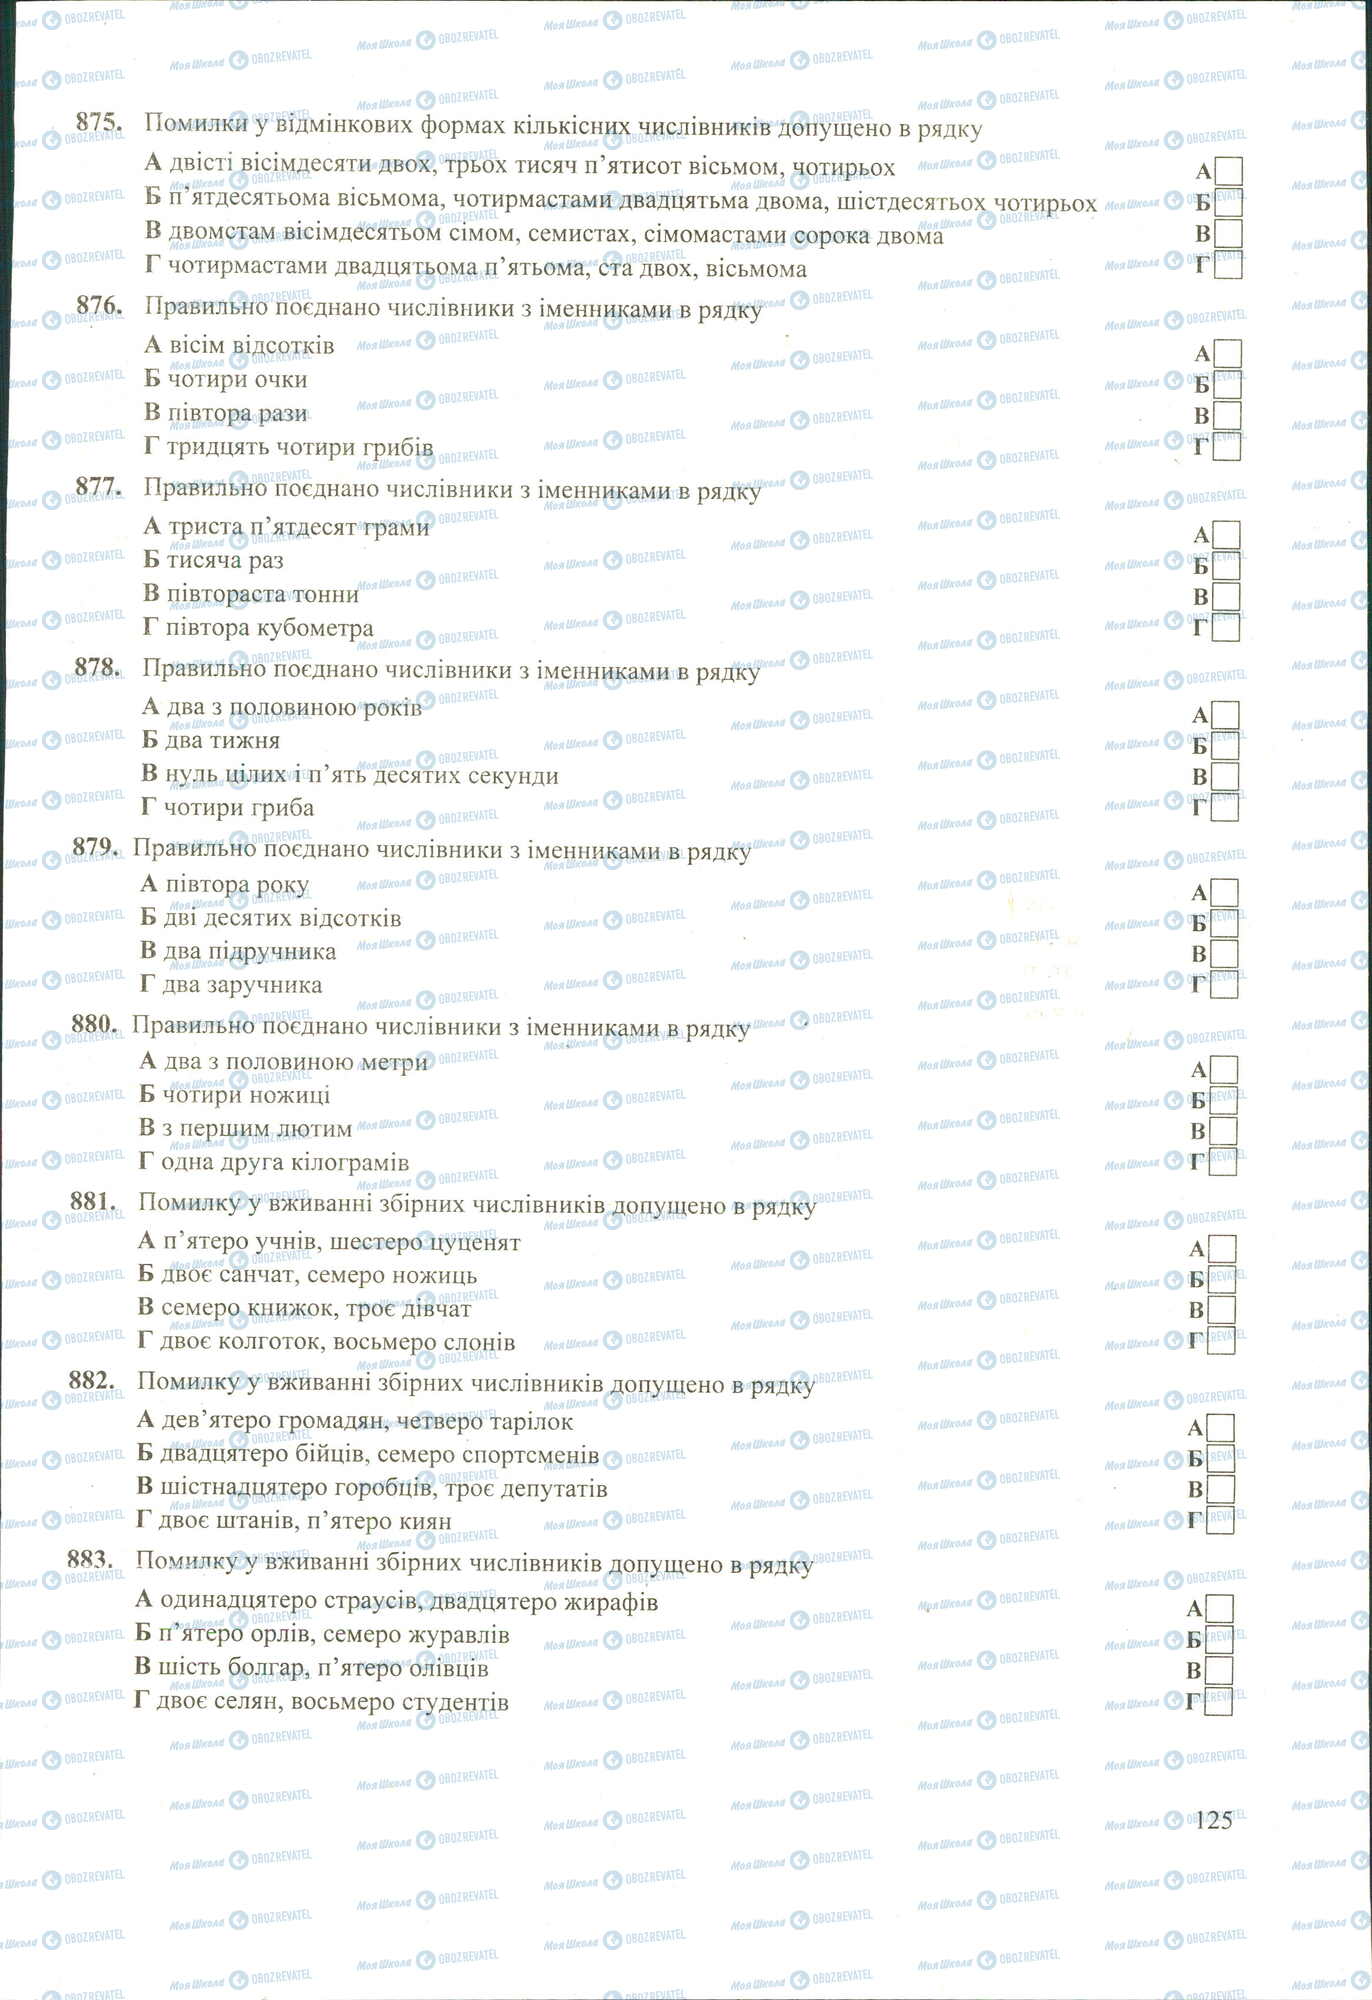 ЗНО Укр мова 11 класс страница 875-883